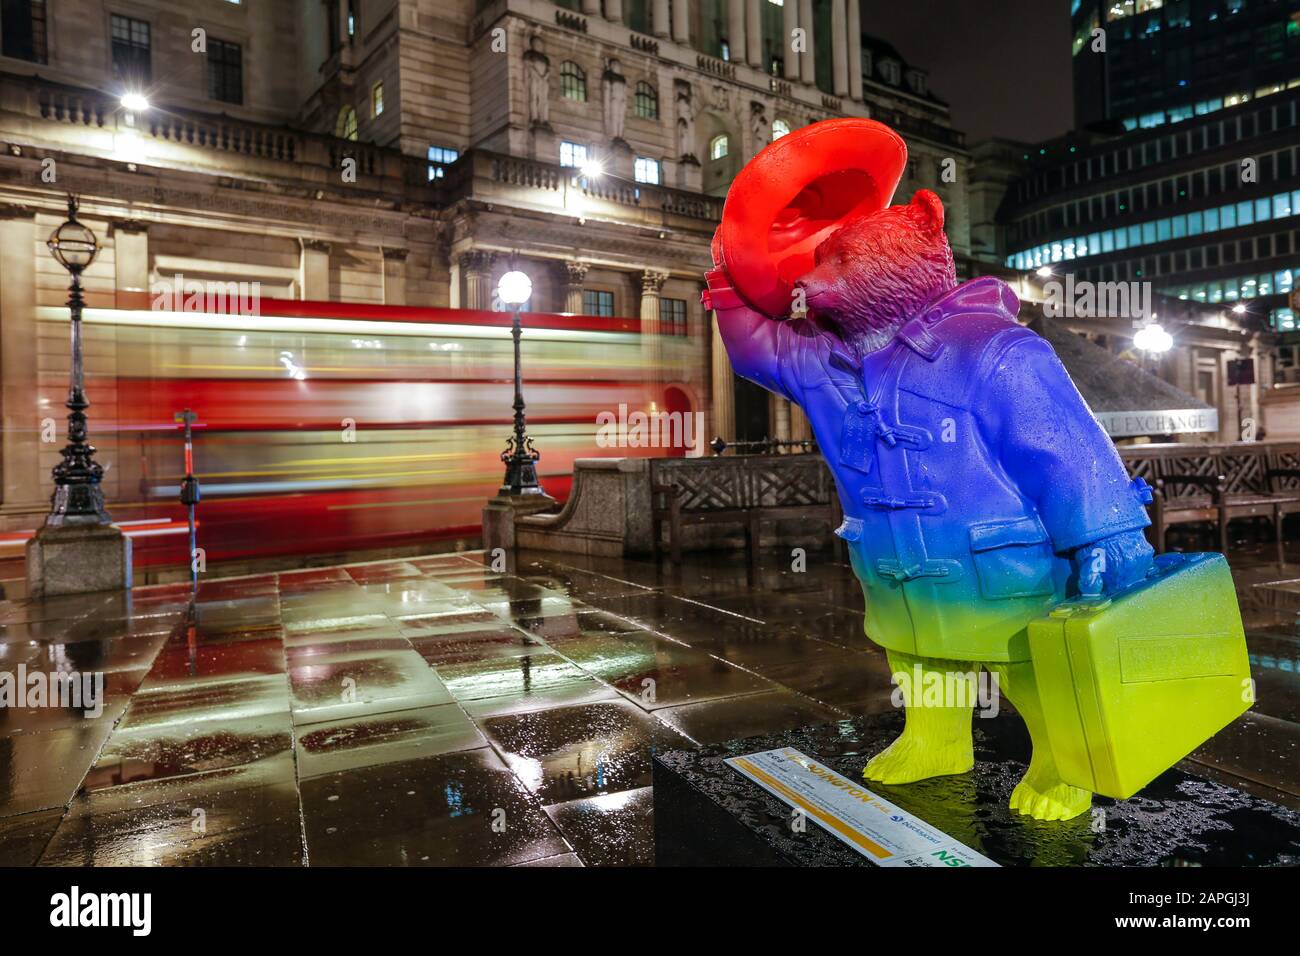 London, Großbritannien. Paddington Bär Abend bunte Statue in der Nähe der Bank Station und mit einer Bank of England im Hintergrund mit rotem Bus sichtbar Stockfoto